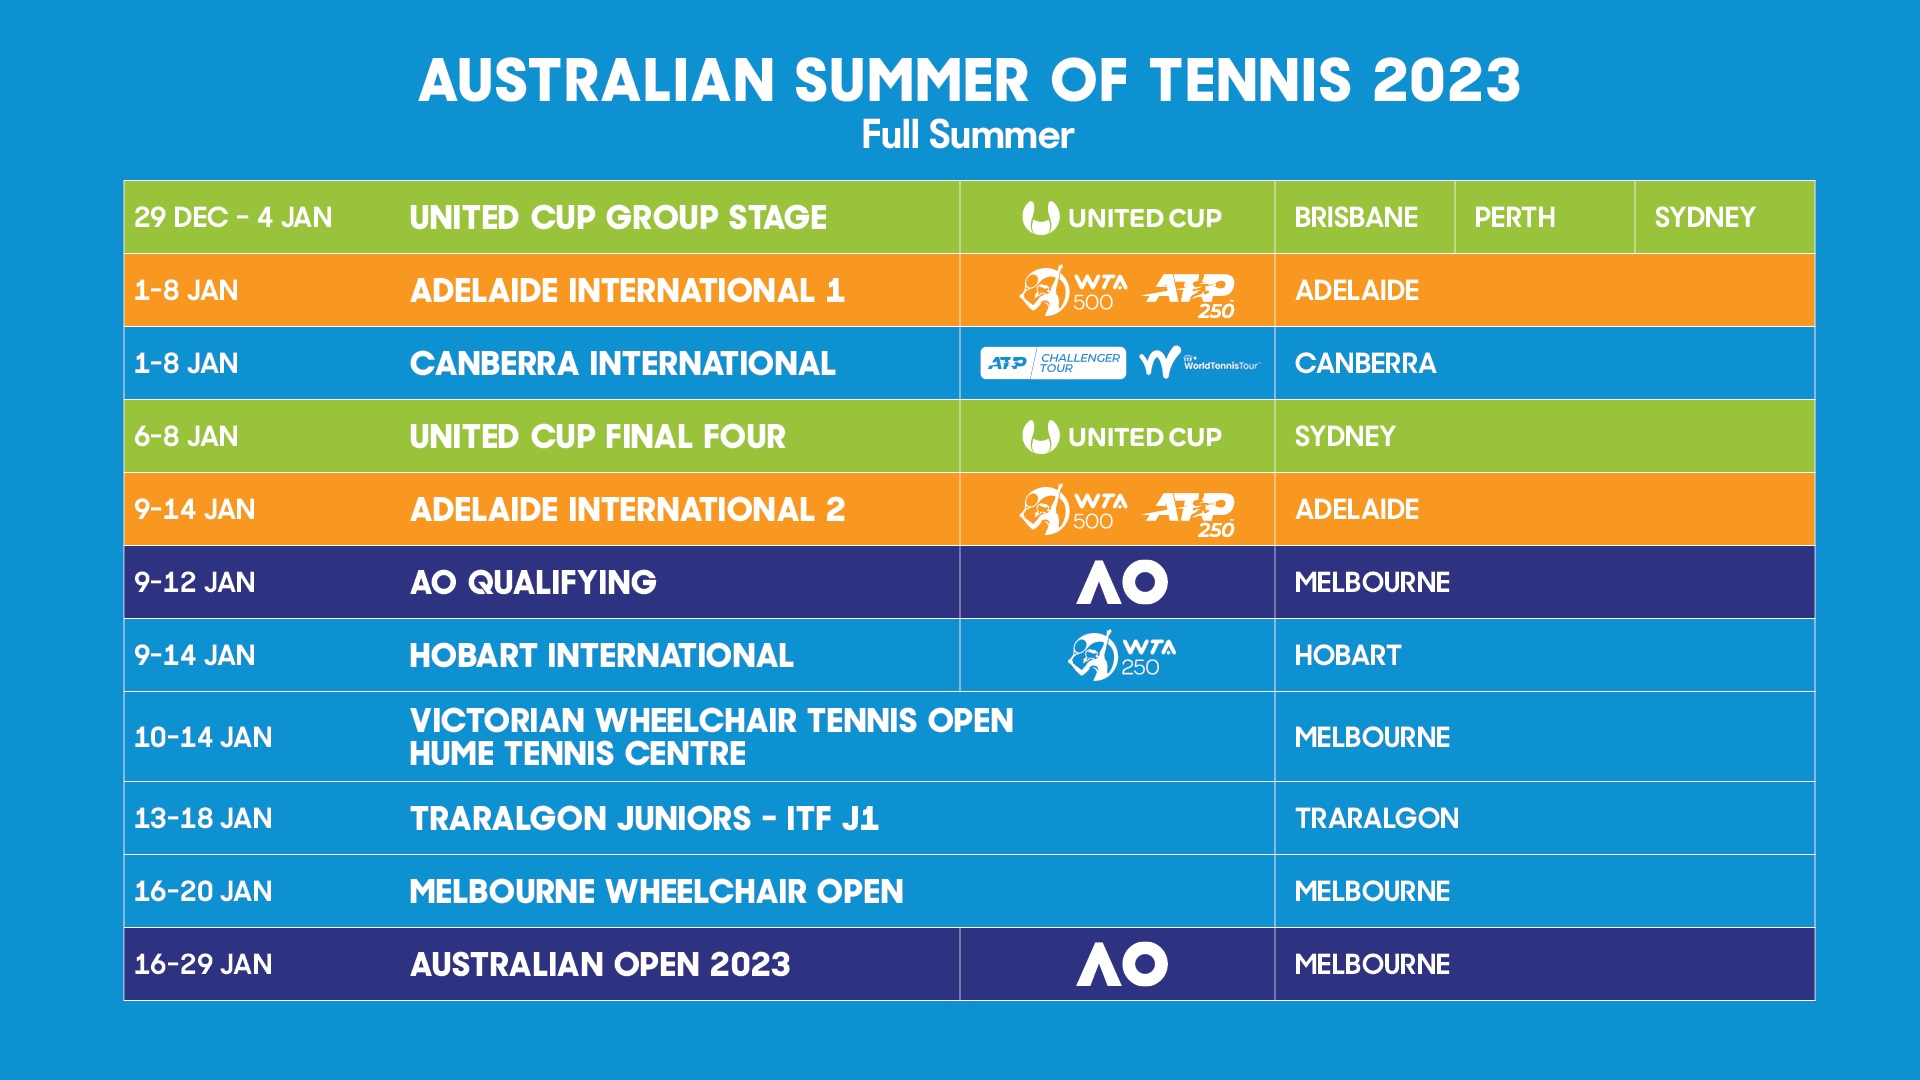 Full 2023 Australian summer of tennis calendar revealed 1 December